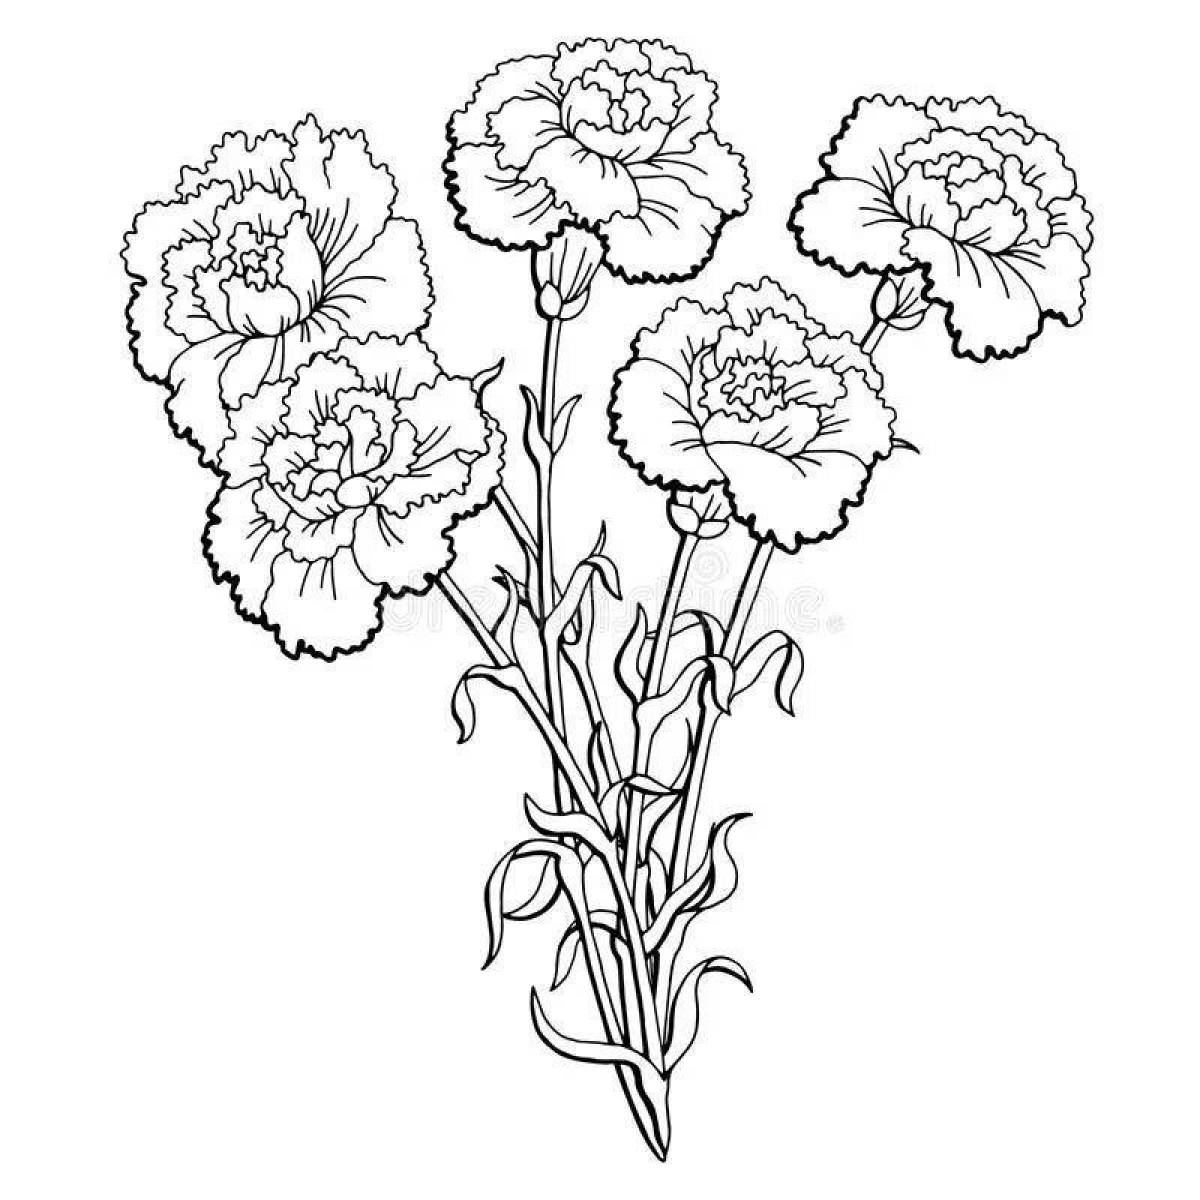 Fun coloring carnation flower